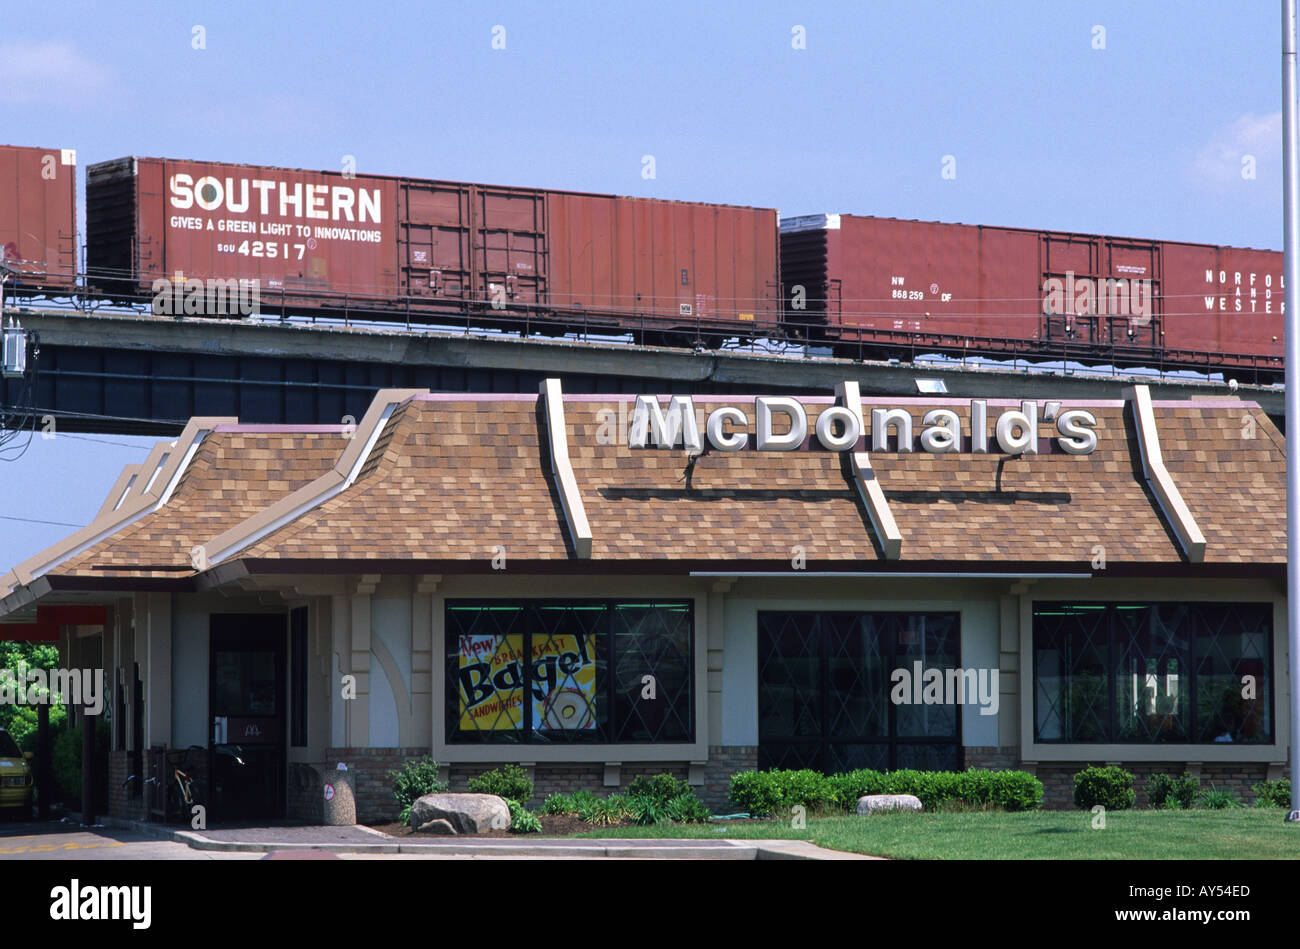 Un train de marchandises qui voyagent au-delà d'un fast-food McDonald's restaurant à Covington Ohio Banque D'Images